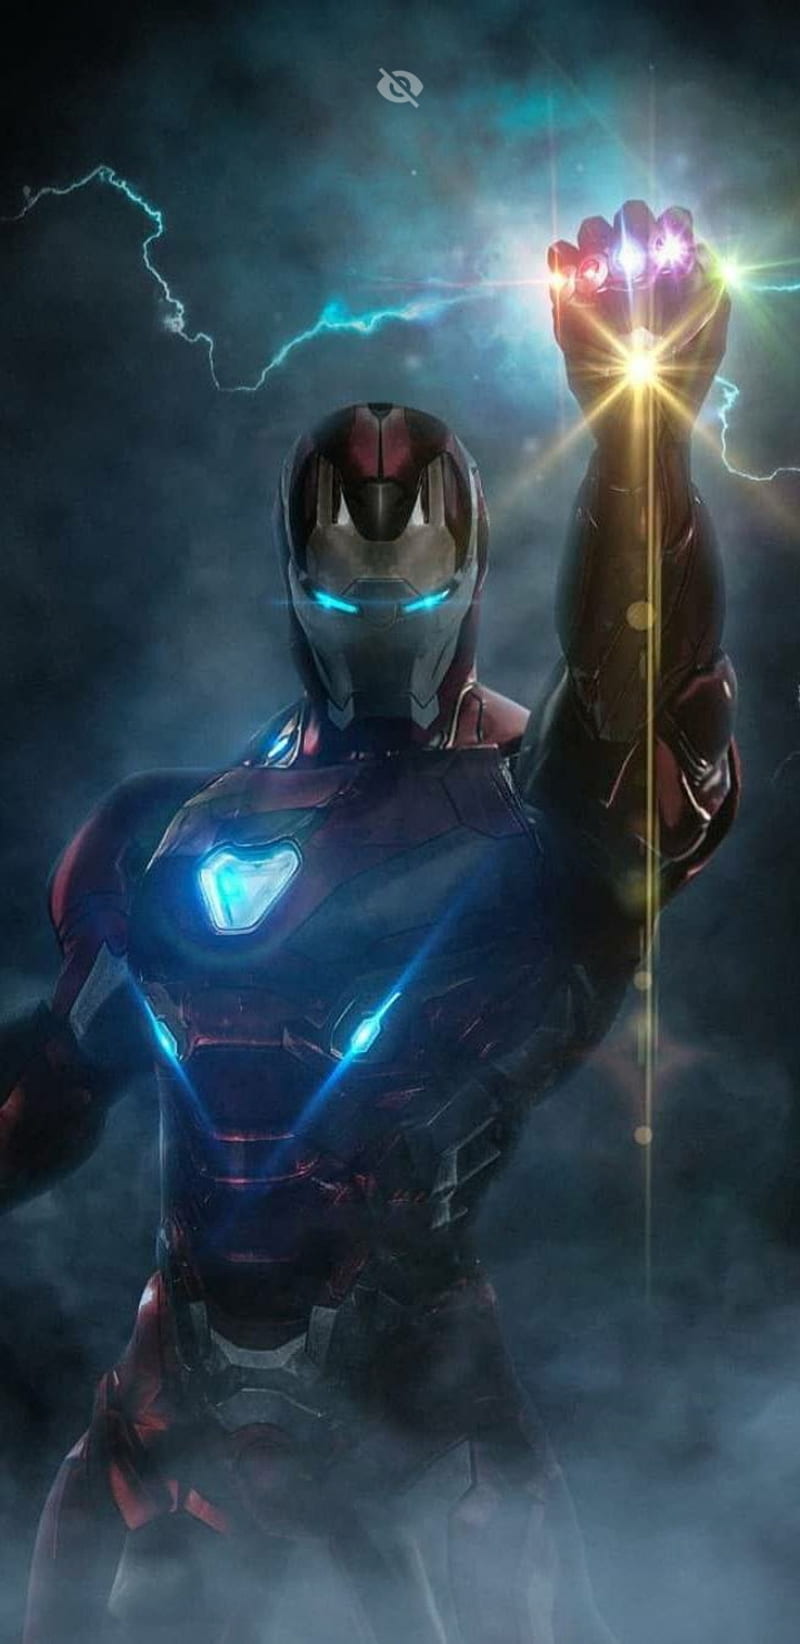 Wallpaper Iron Man HD cho điện thoại của bạn với cảnh hành trình cuối cùng của siêu anh hùng chắc chắn sẽ mang đến cho bạn cảm giác mãnh liệt và bất khả chiến bại trong đấu trường của cuộc sống.